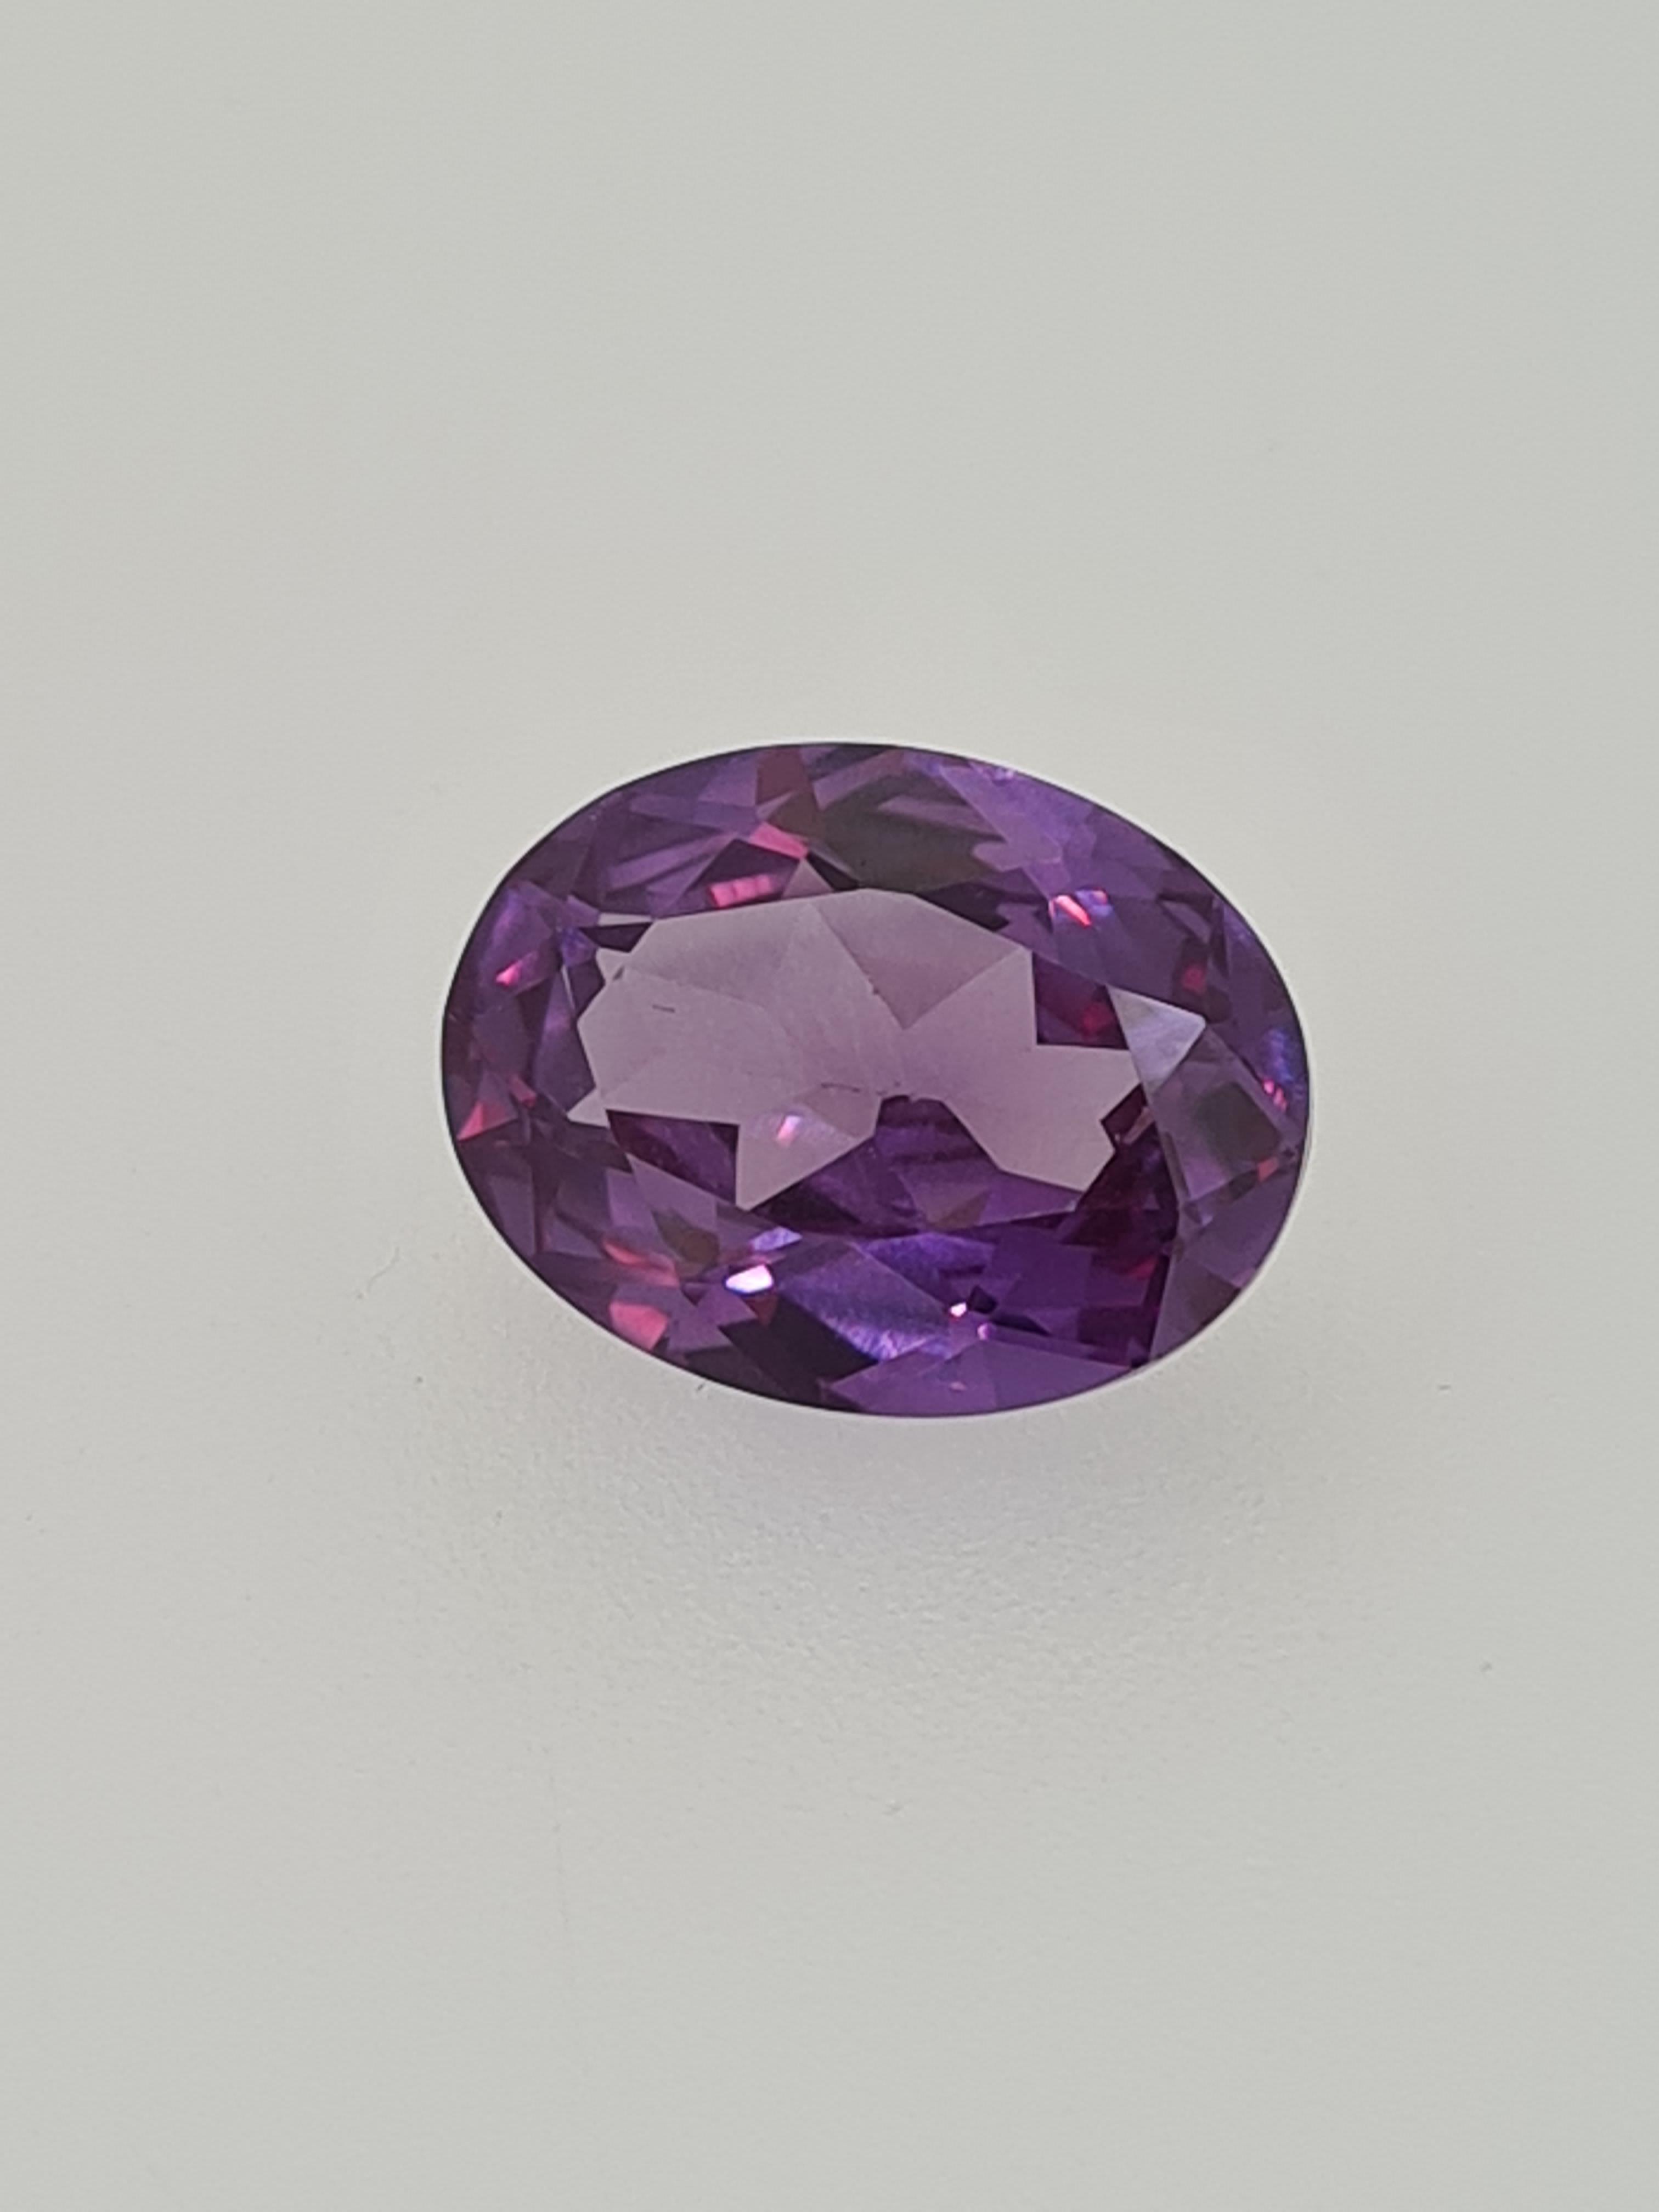 Amethyst oval cut gemstone - Image 3 of 4